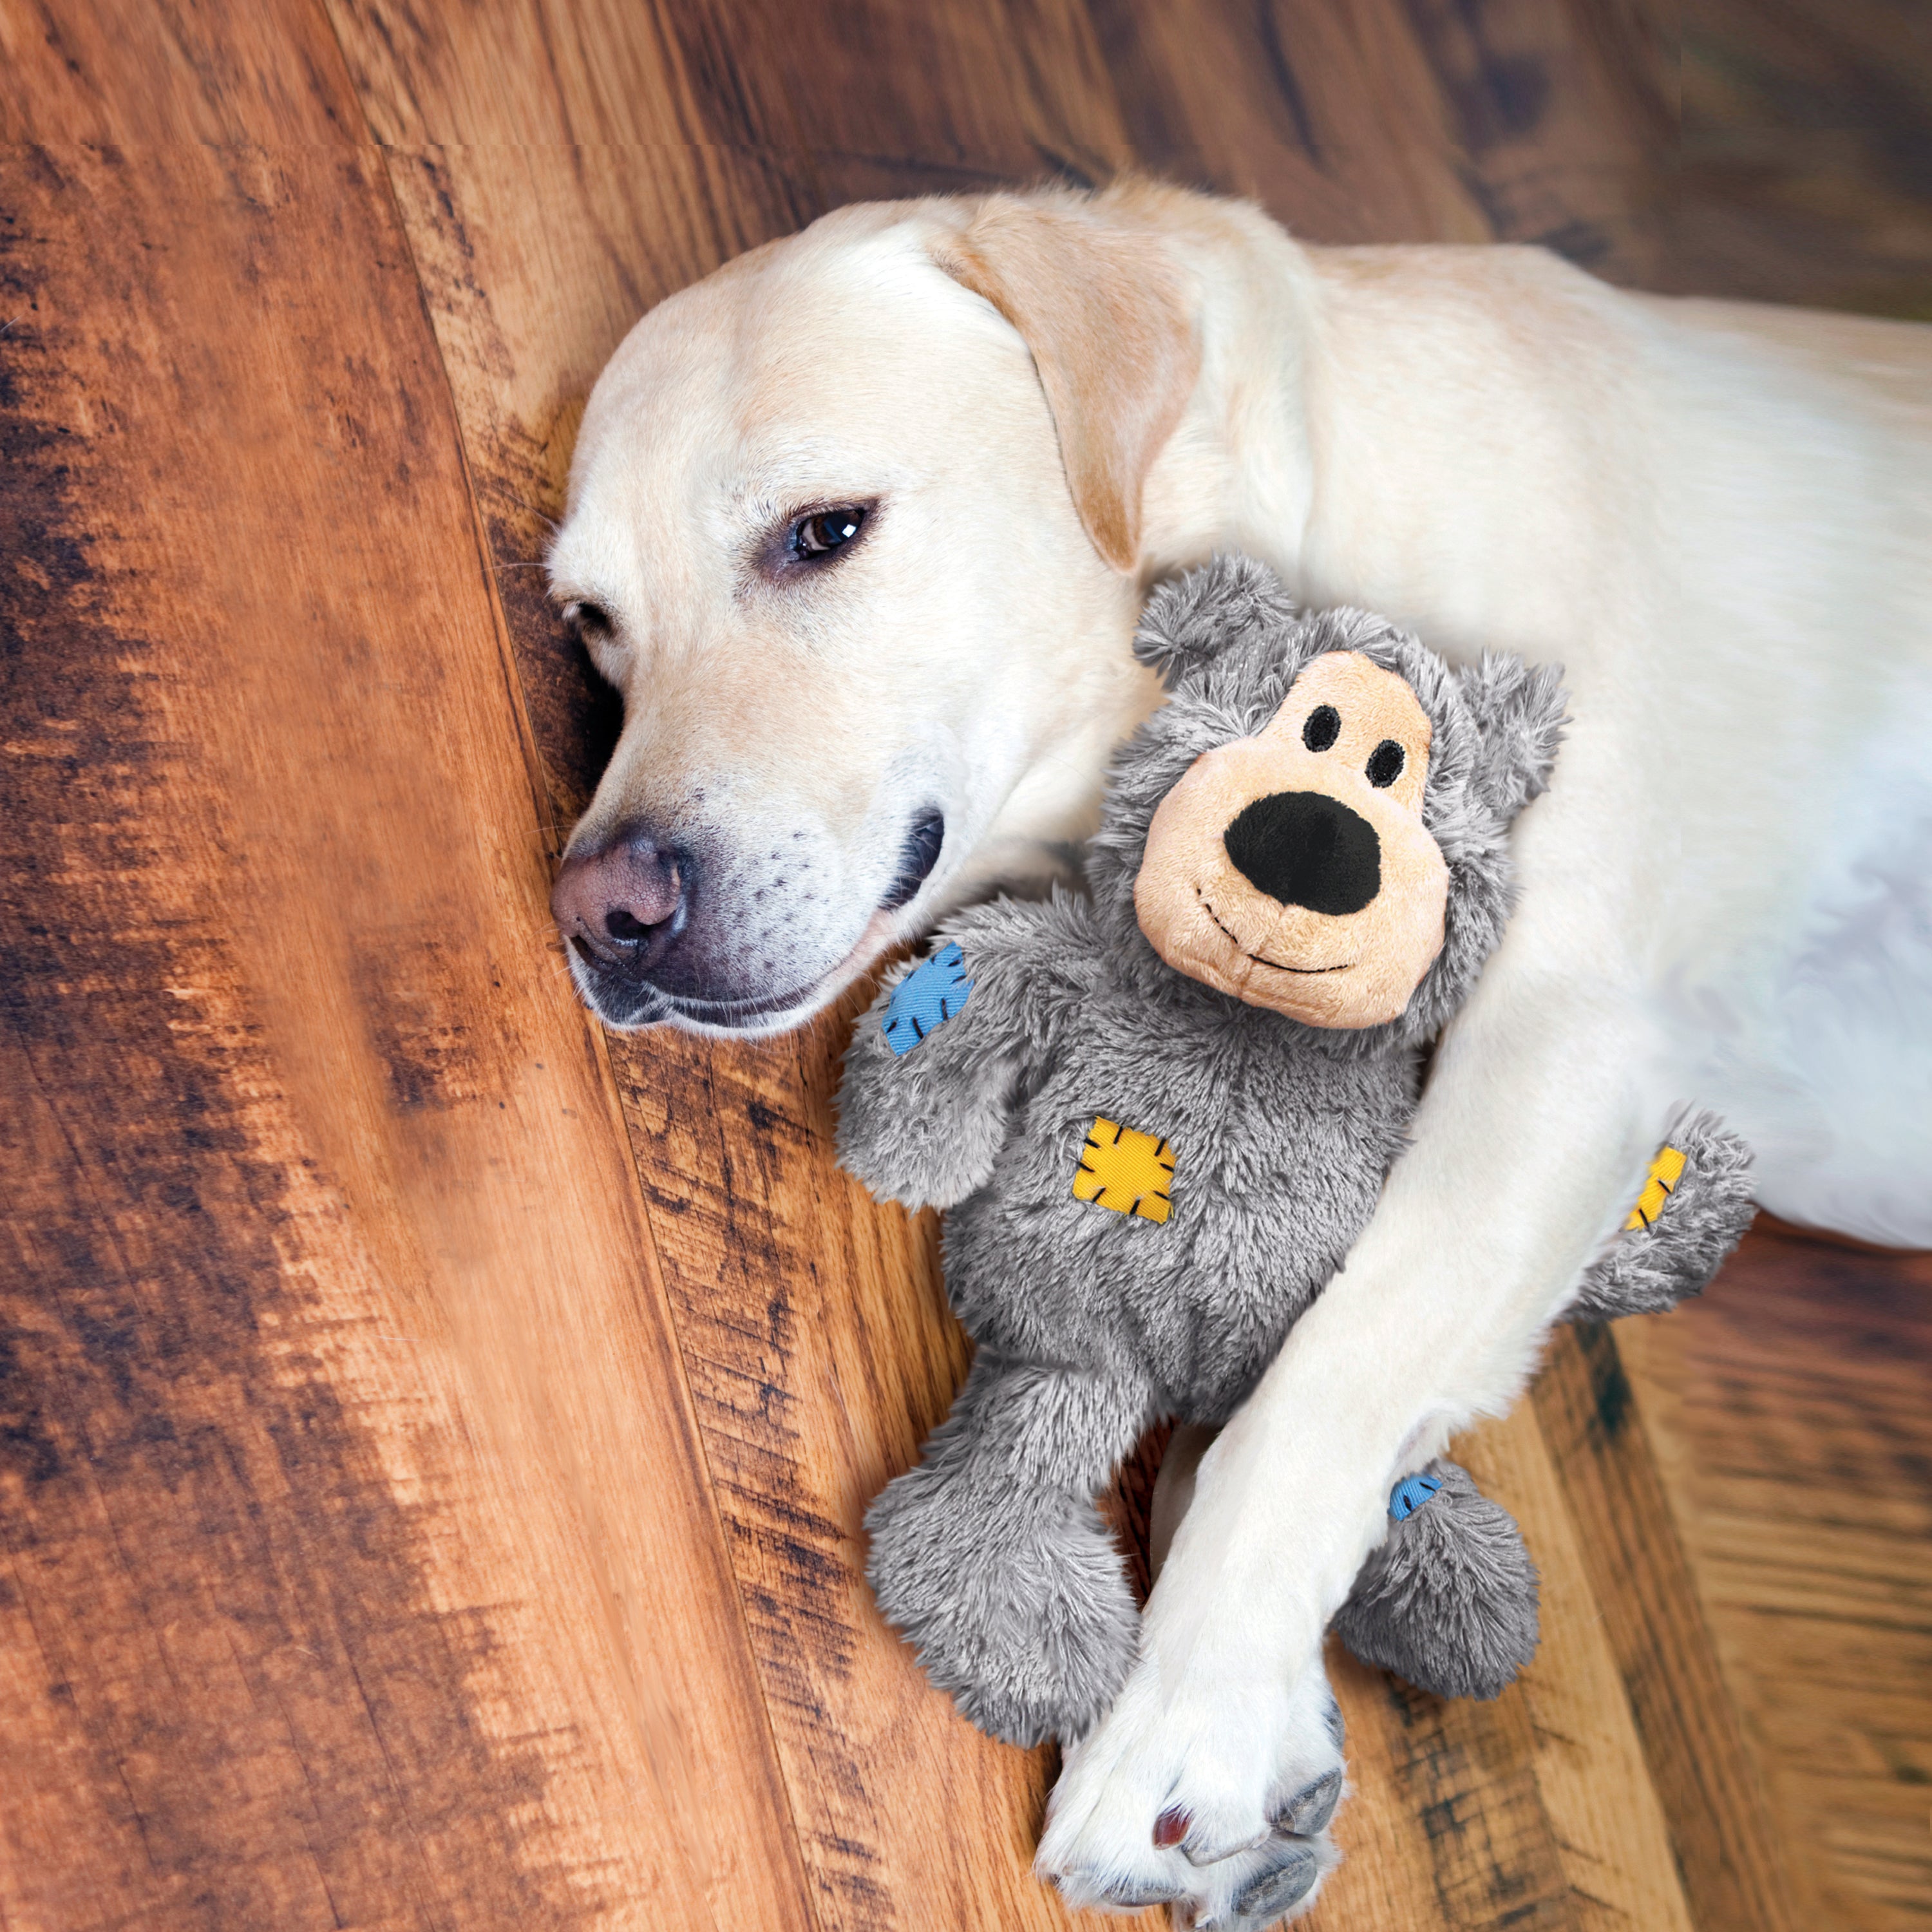 Bark Lover Juguetes de peluche para perros, juguete chirriante interactivo  para todos los perros, pequeños, medianos o grandes, juguetes duraderos con